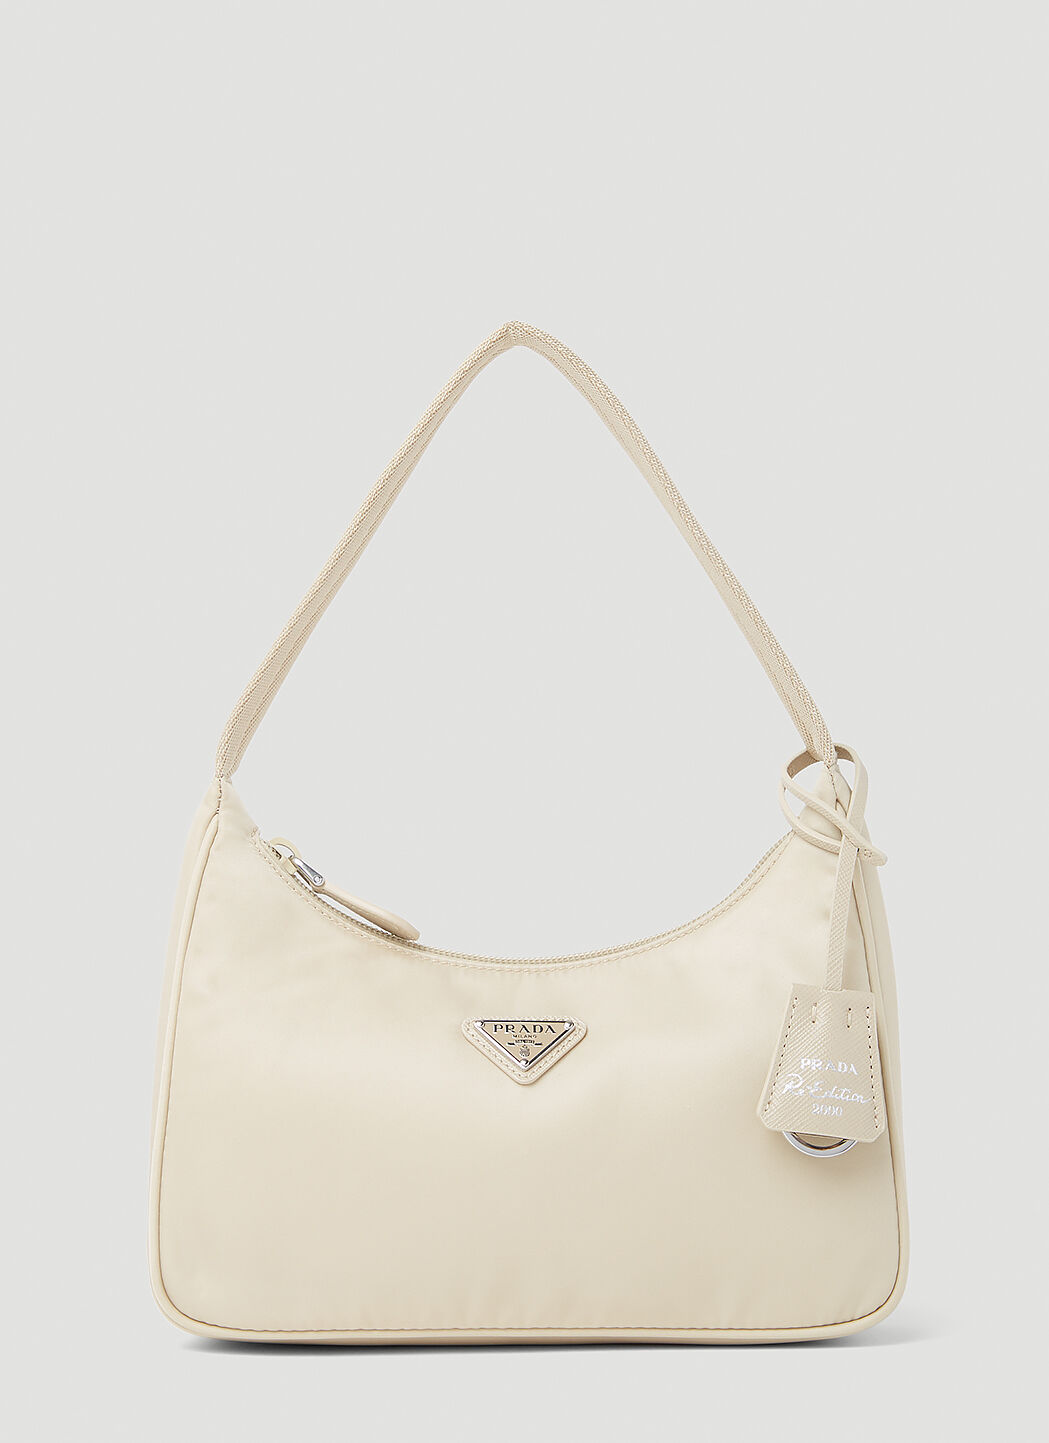 Prada Re-Edition Handbag Beige pra0256028